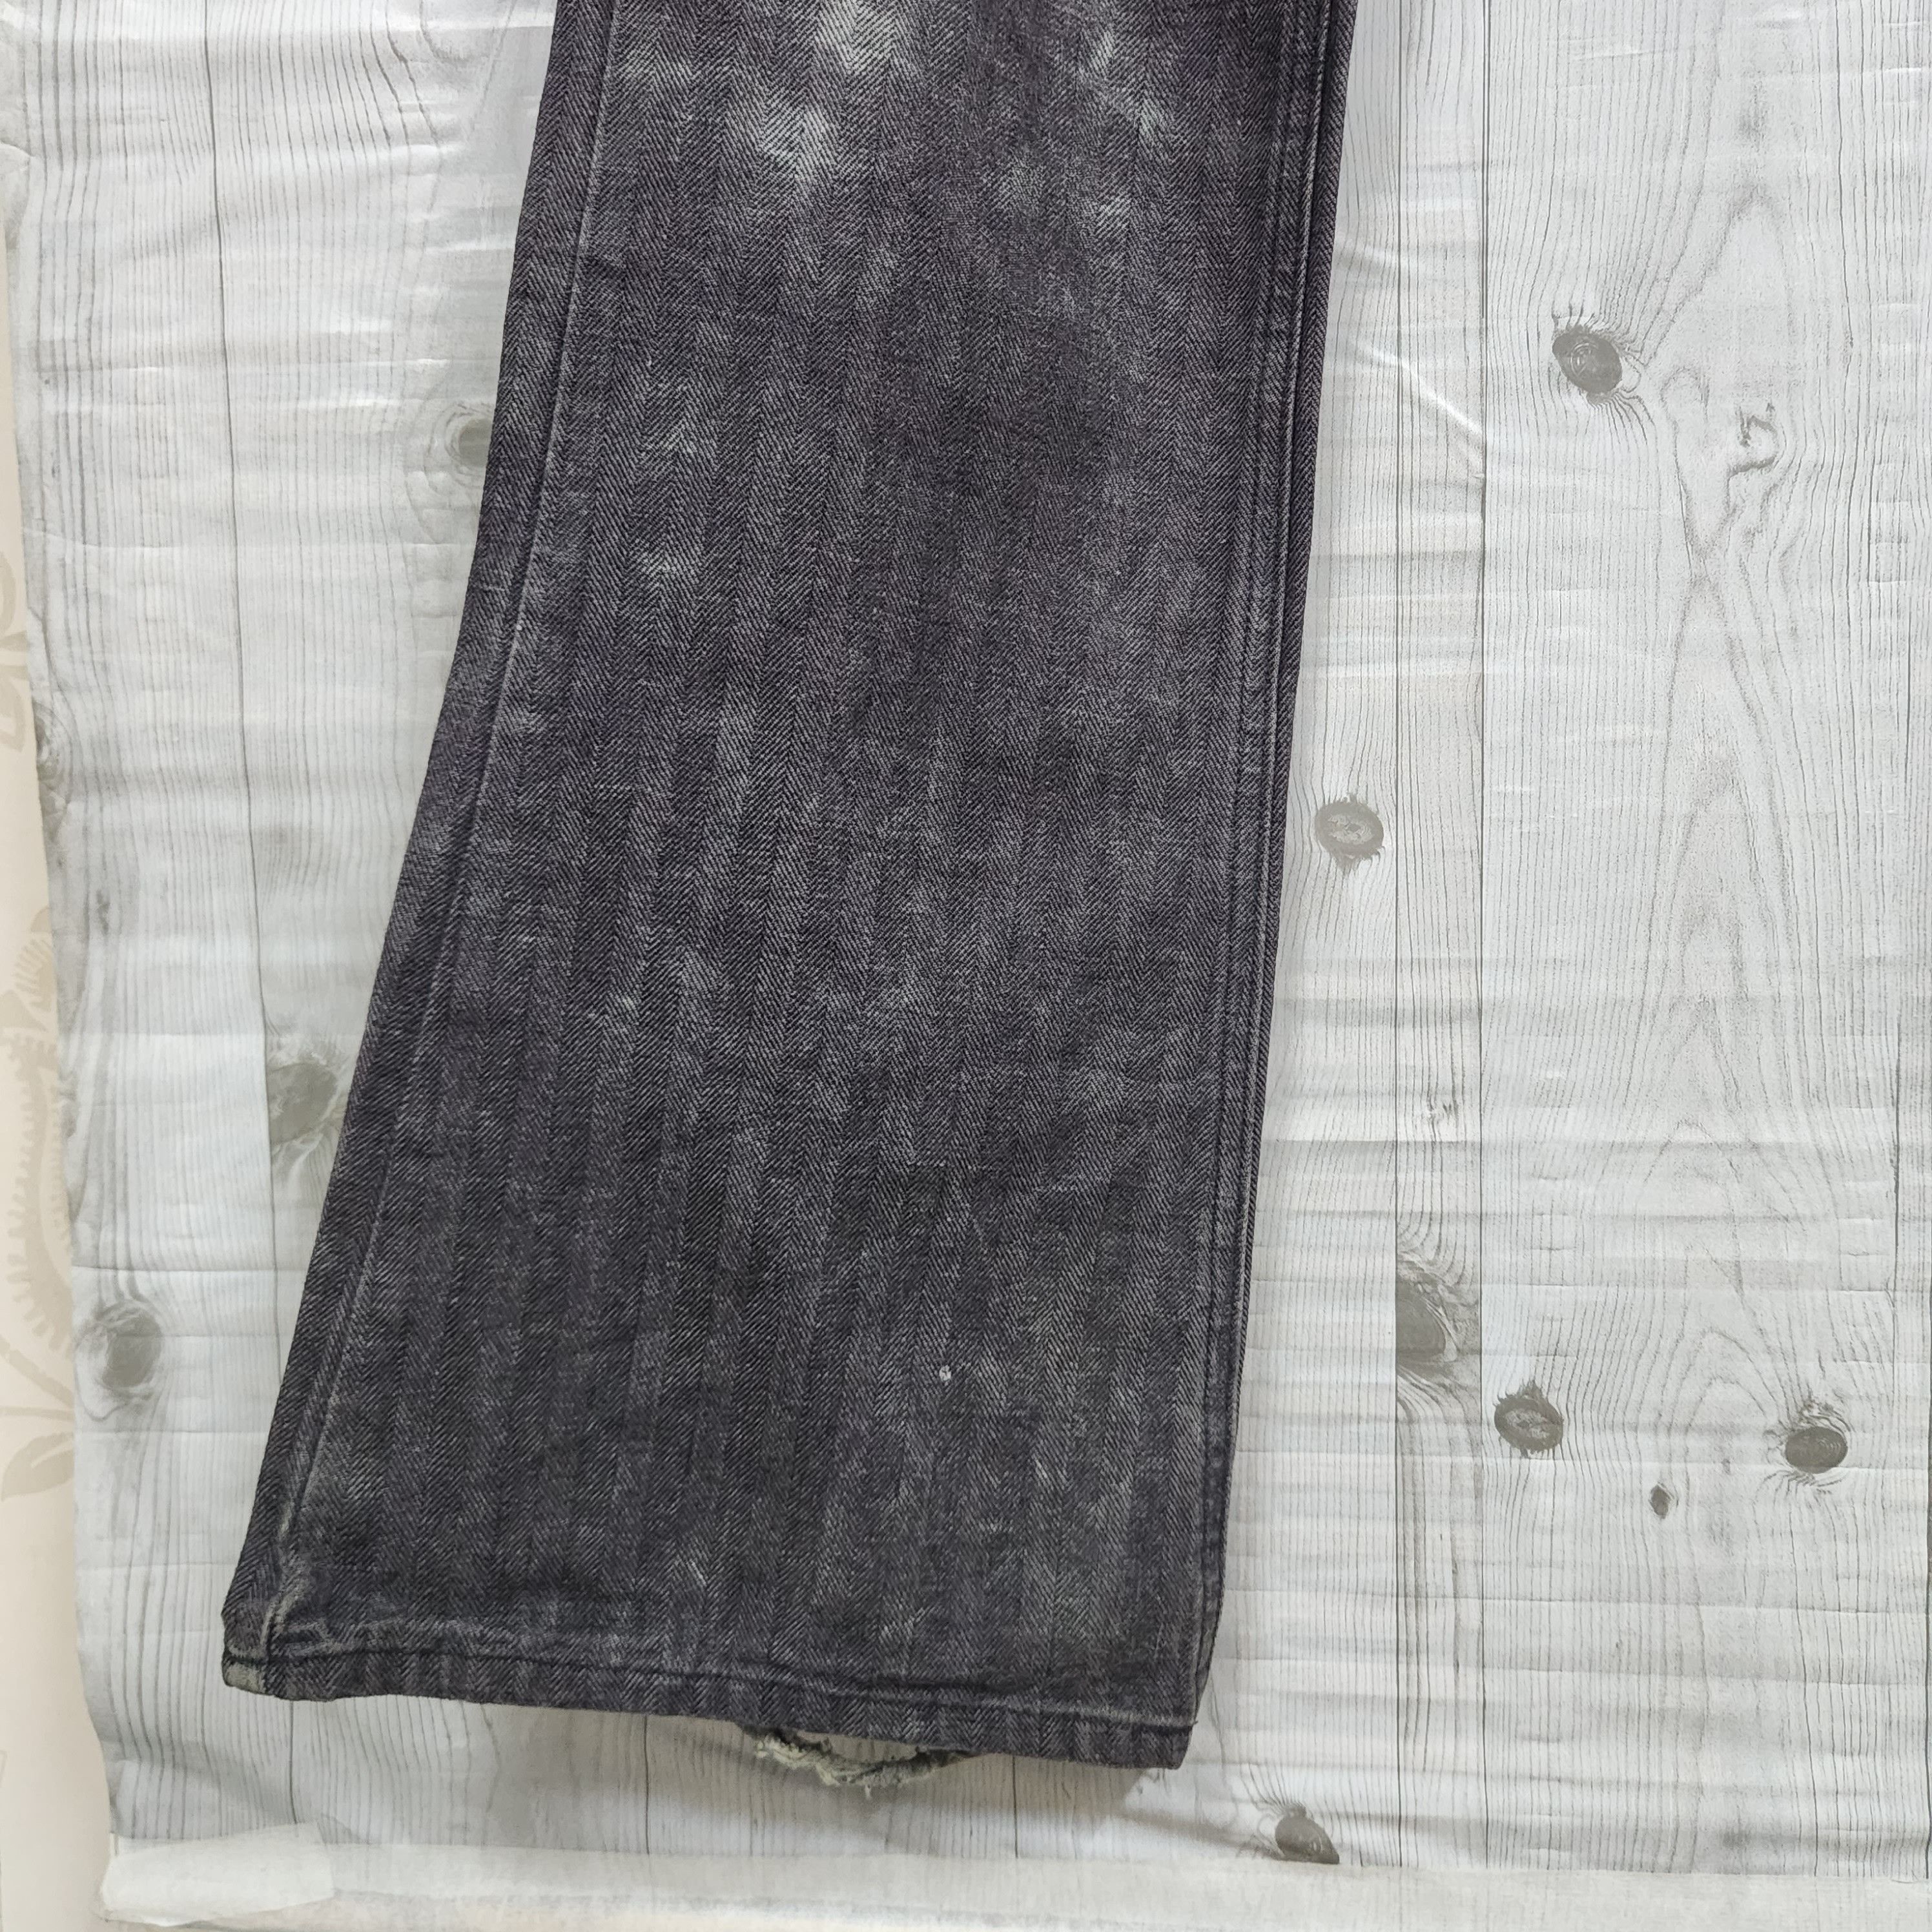 Japanese Brand - Flared Edge Rupert Denim Japan Jeans 70s Style - 7